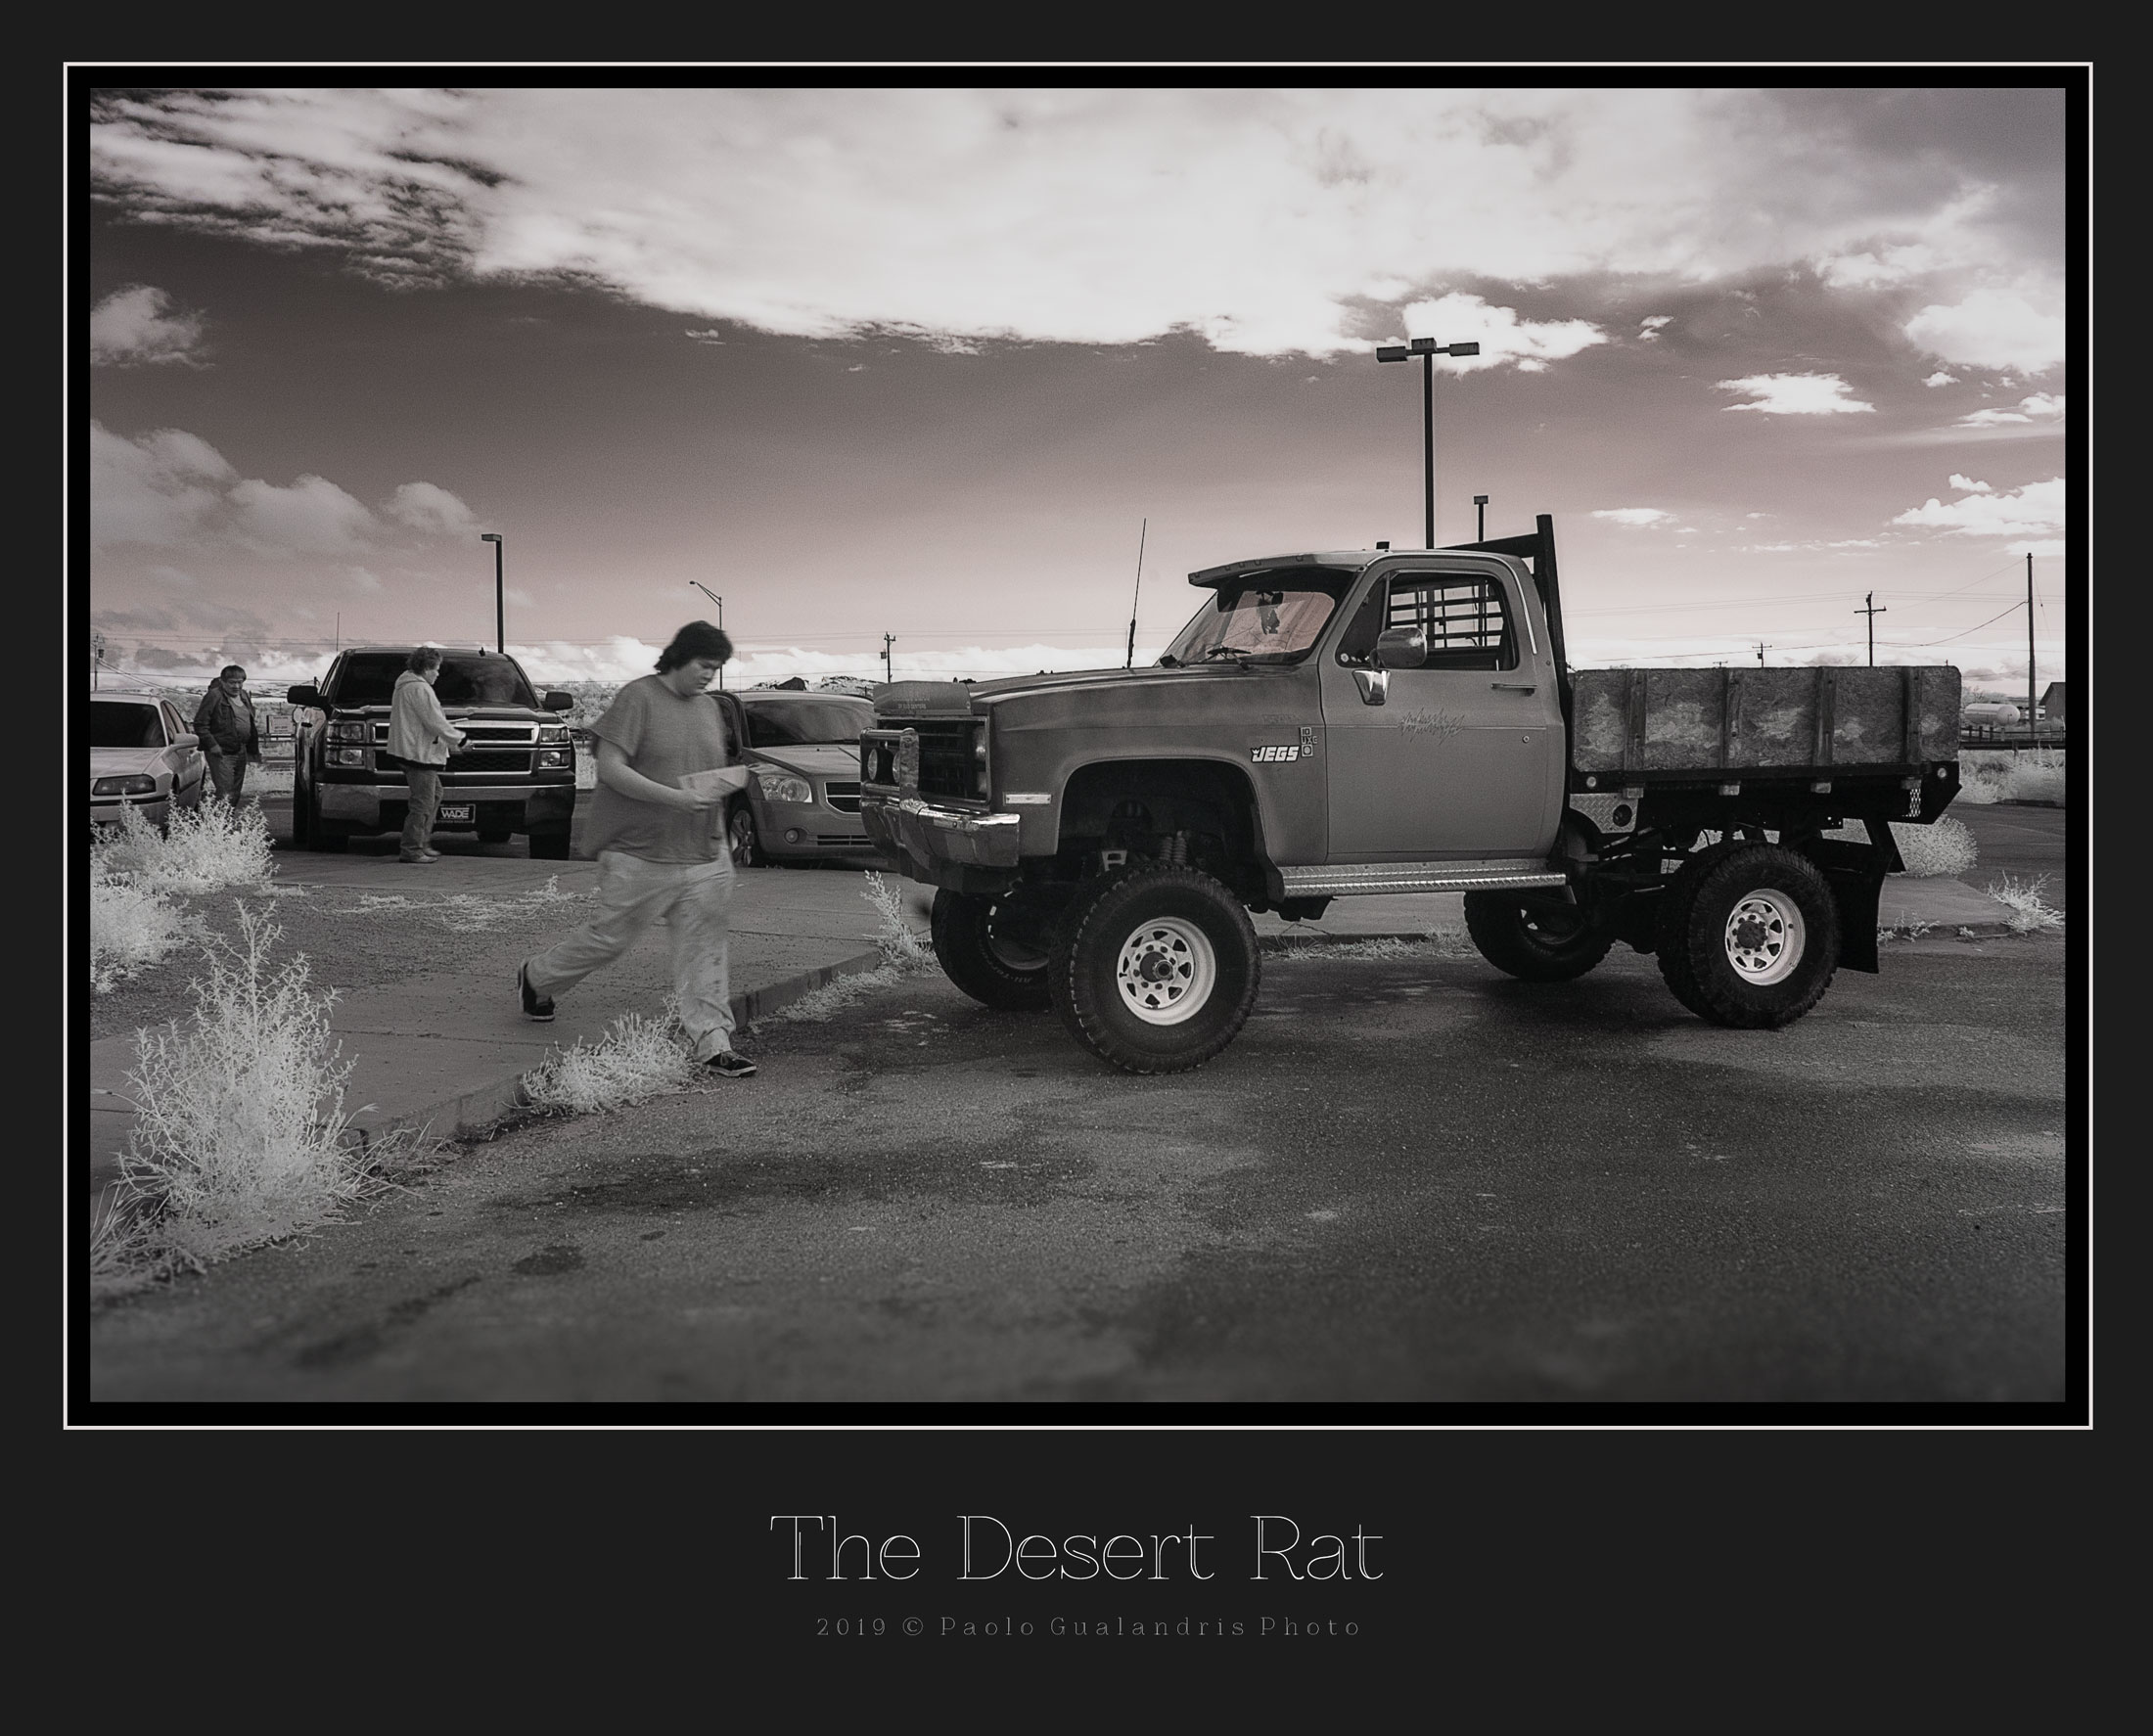 The Desert Rat...